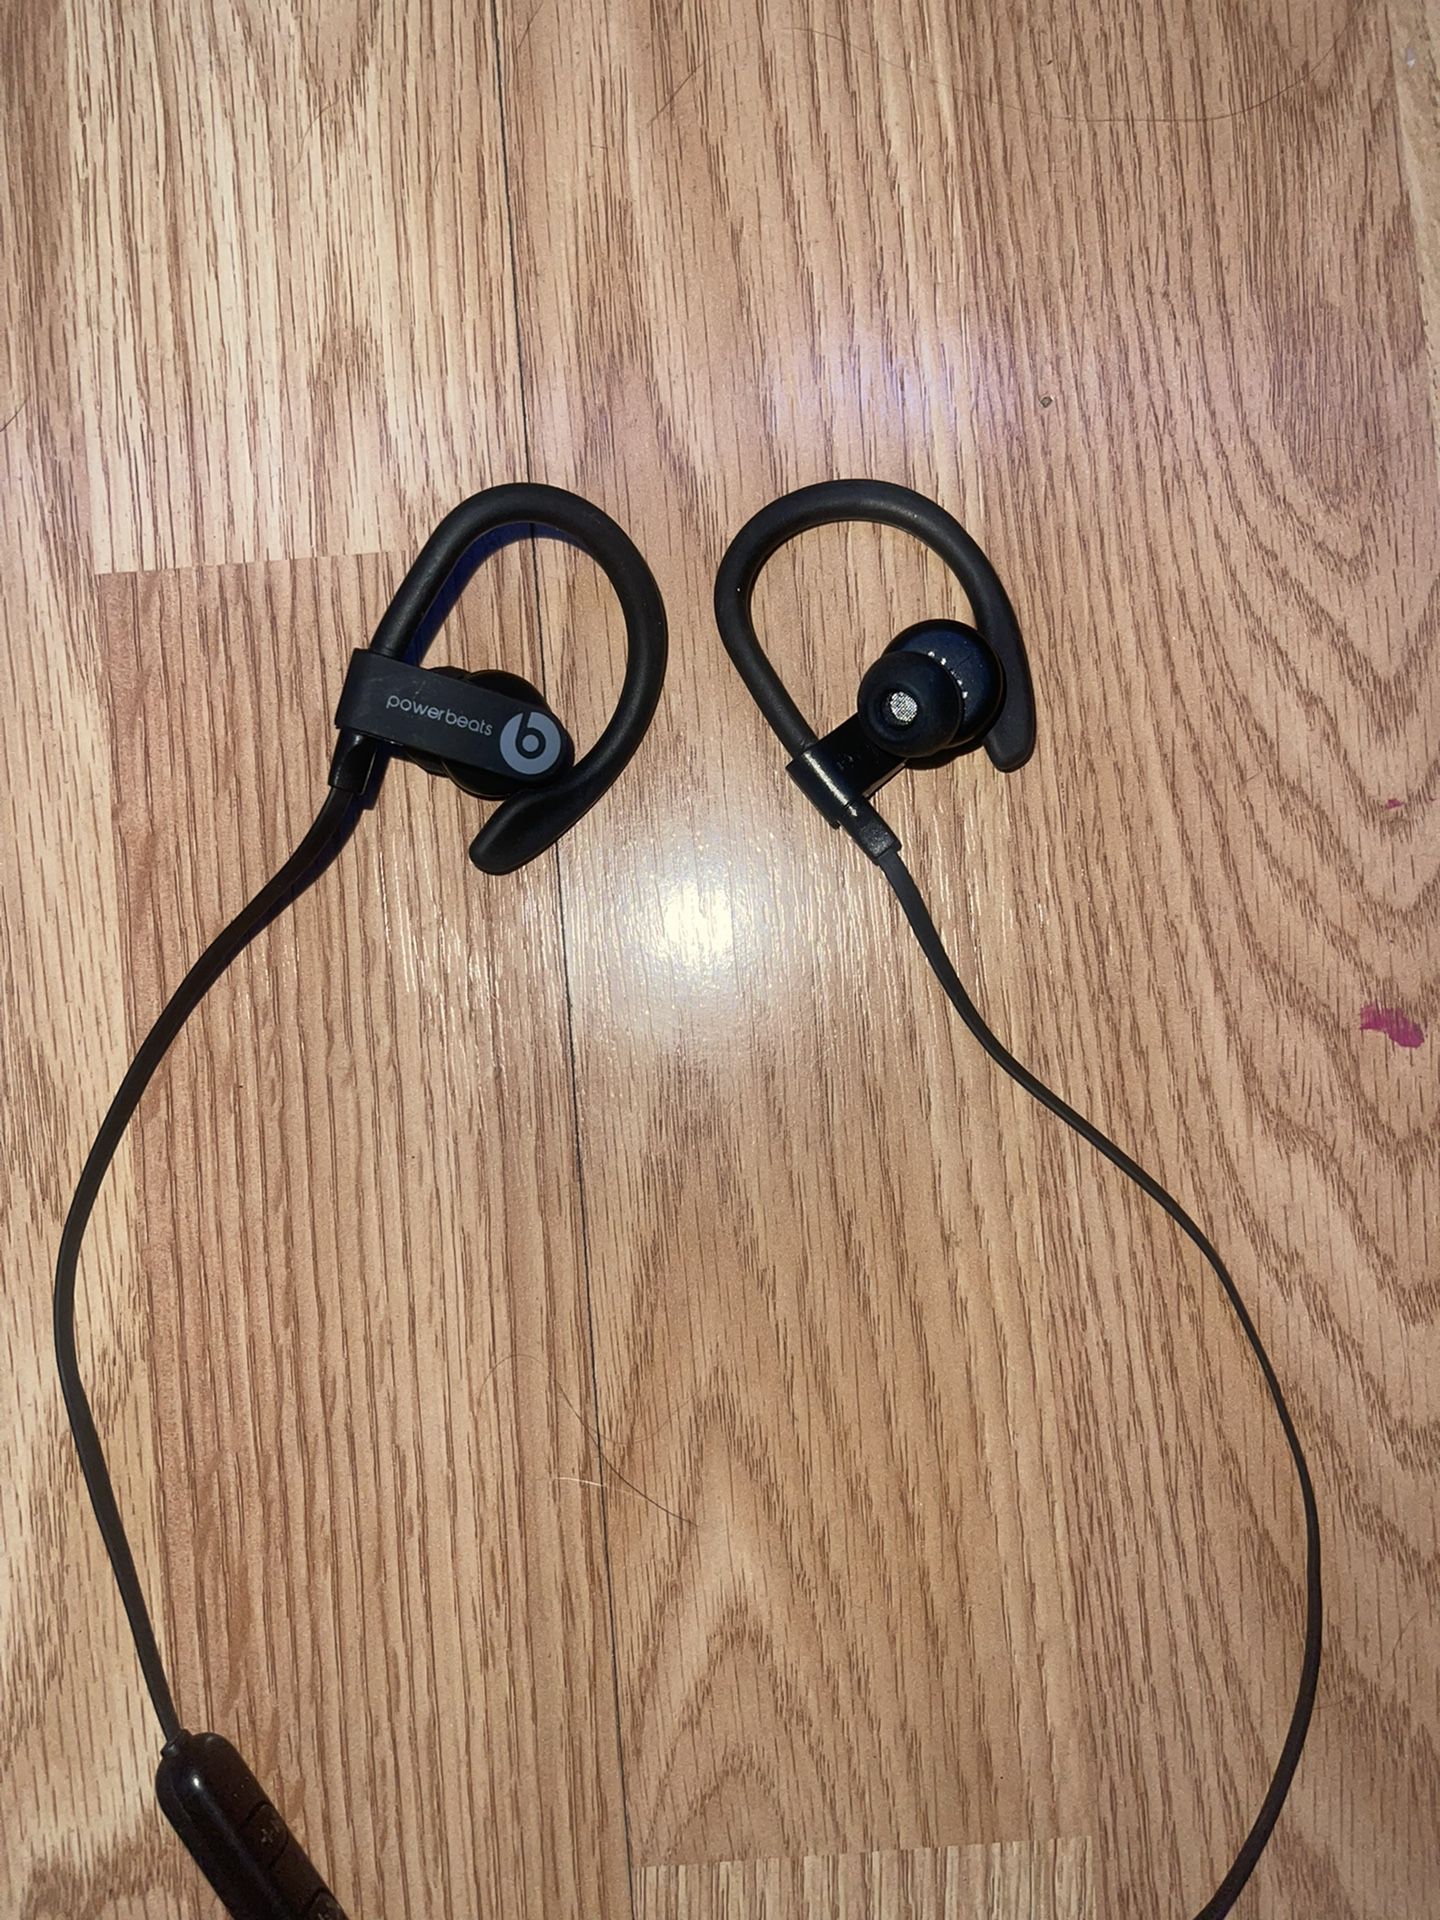 POWERBEATS BY DRE wireless earbuds/headphones